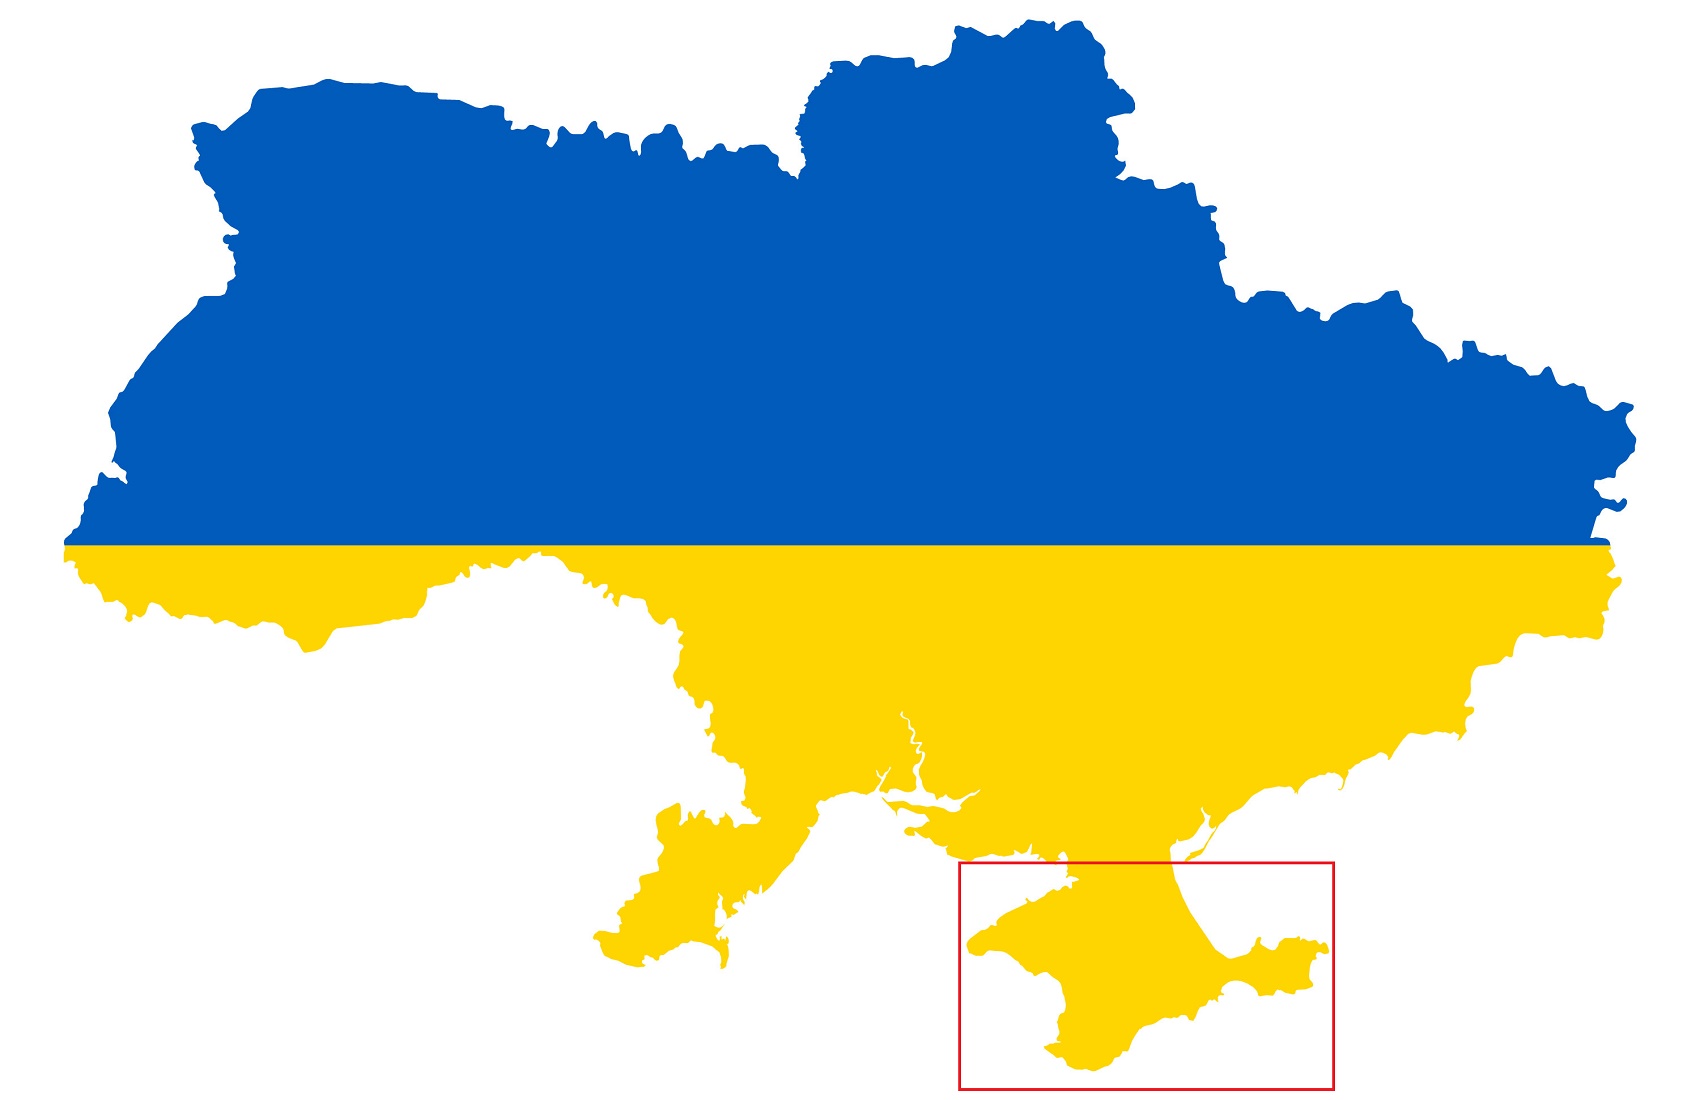 Львовский горсовет опубликовал видео с картой Украины без Крыма